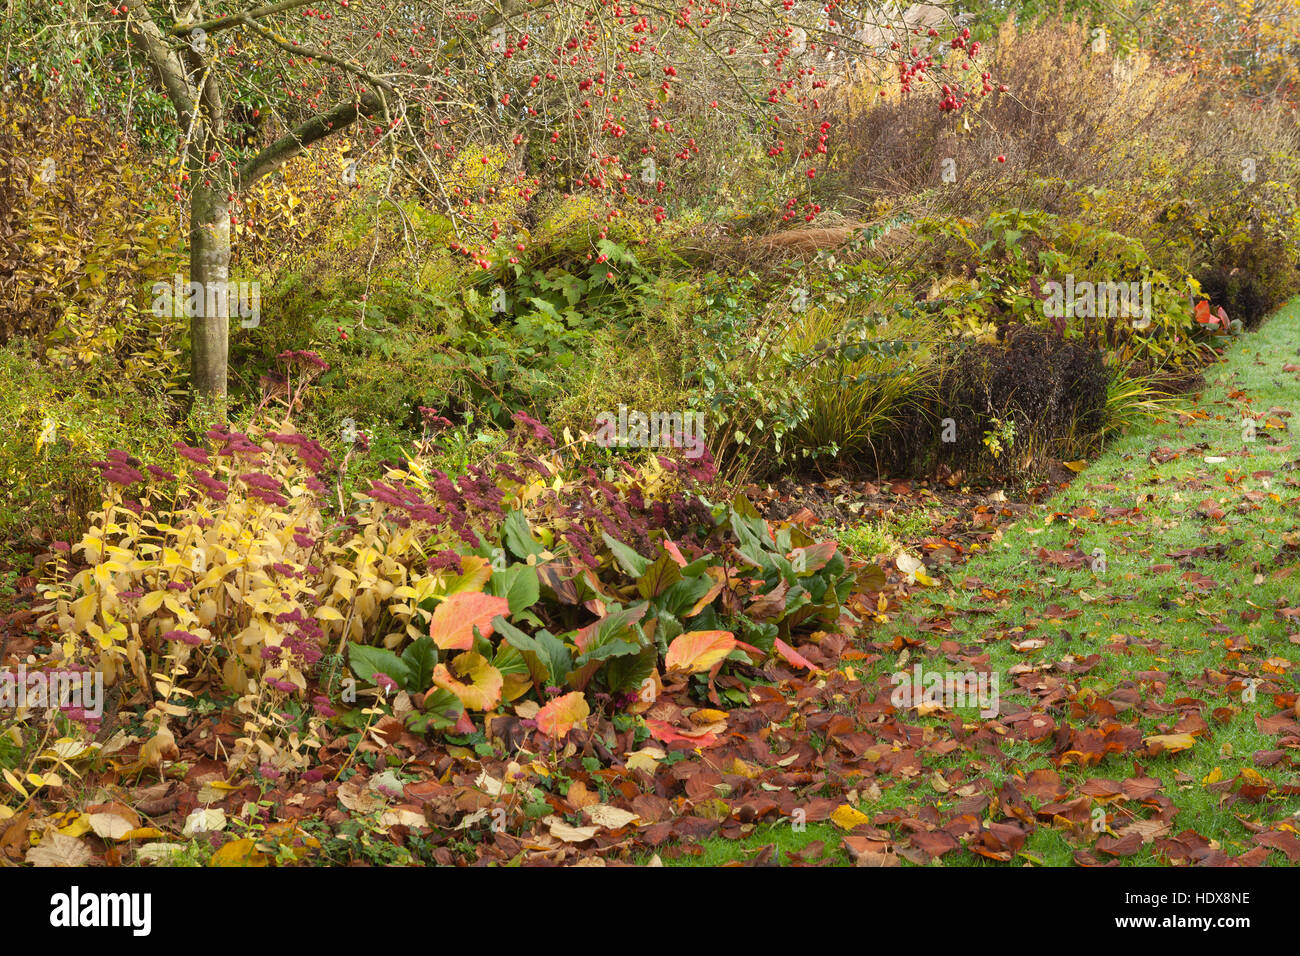 L'automne à Goltho Gardens dans le Lincolnshire, au Royaume-Uni. Un 4,5 acre jardin avec intérêt toute l'année. Partie de Lincolnshire Gardens scheme. Banque D'Images